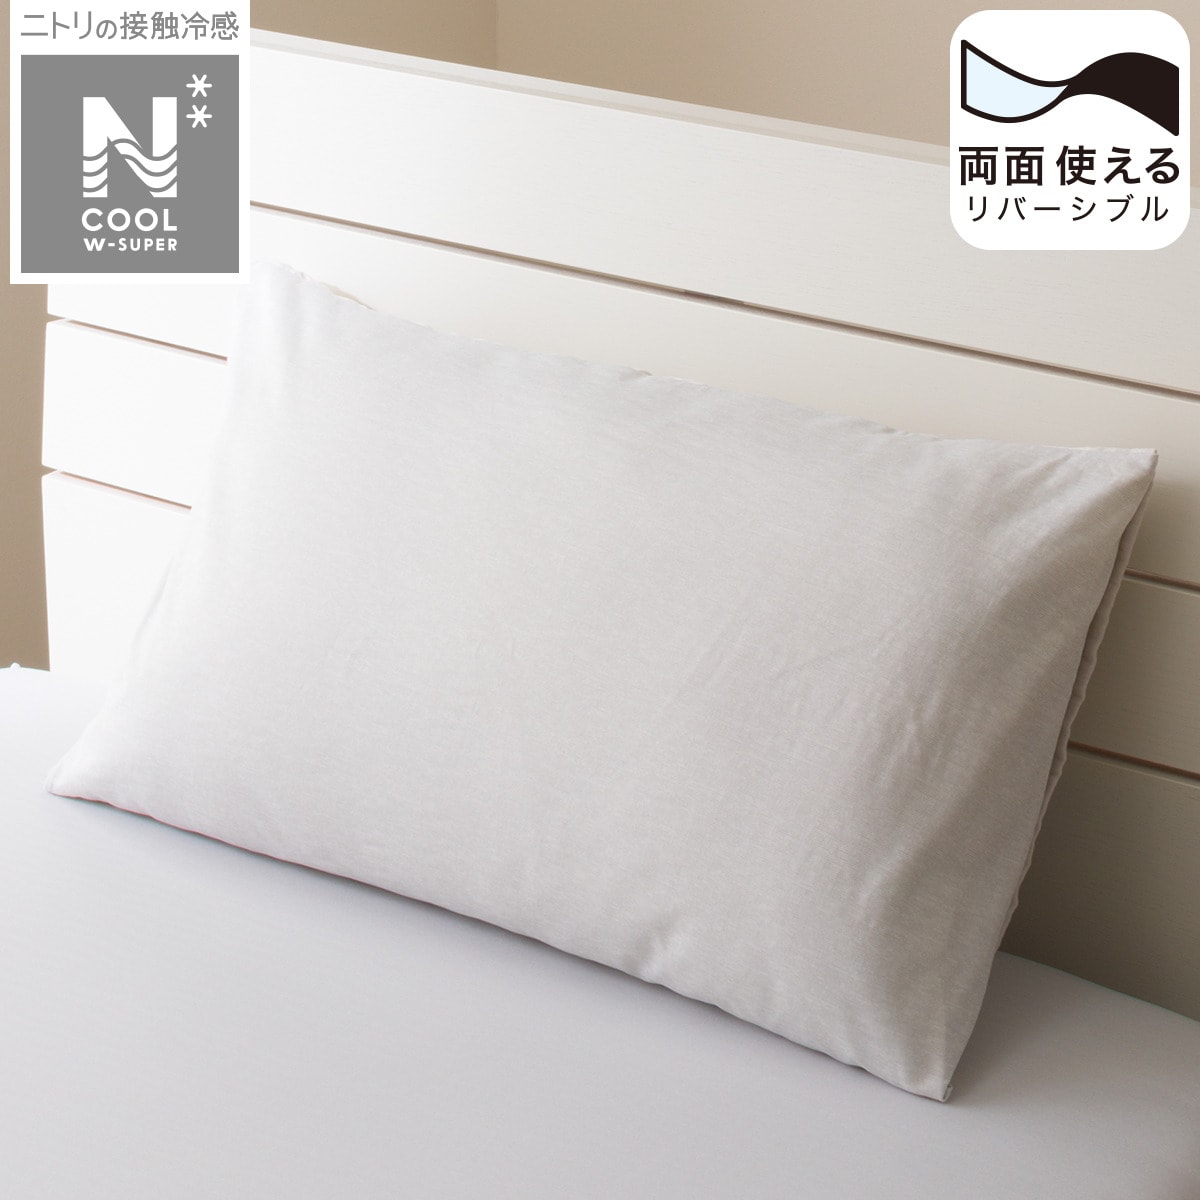 ニトリの枕カバー(NクールWSP GY 23NC-21)   【1年保証】(布団・寝具)